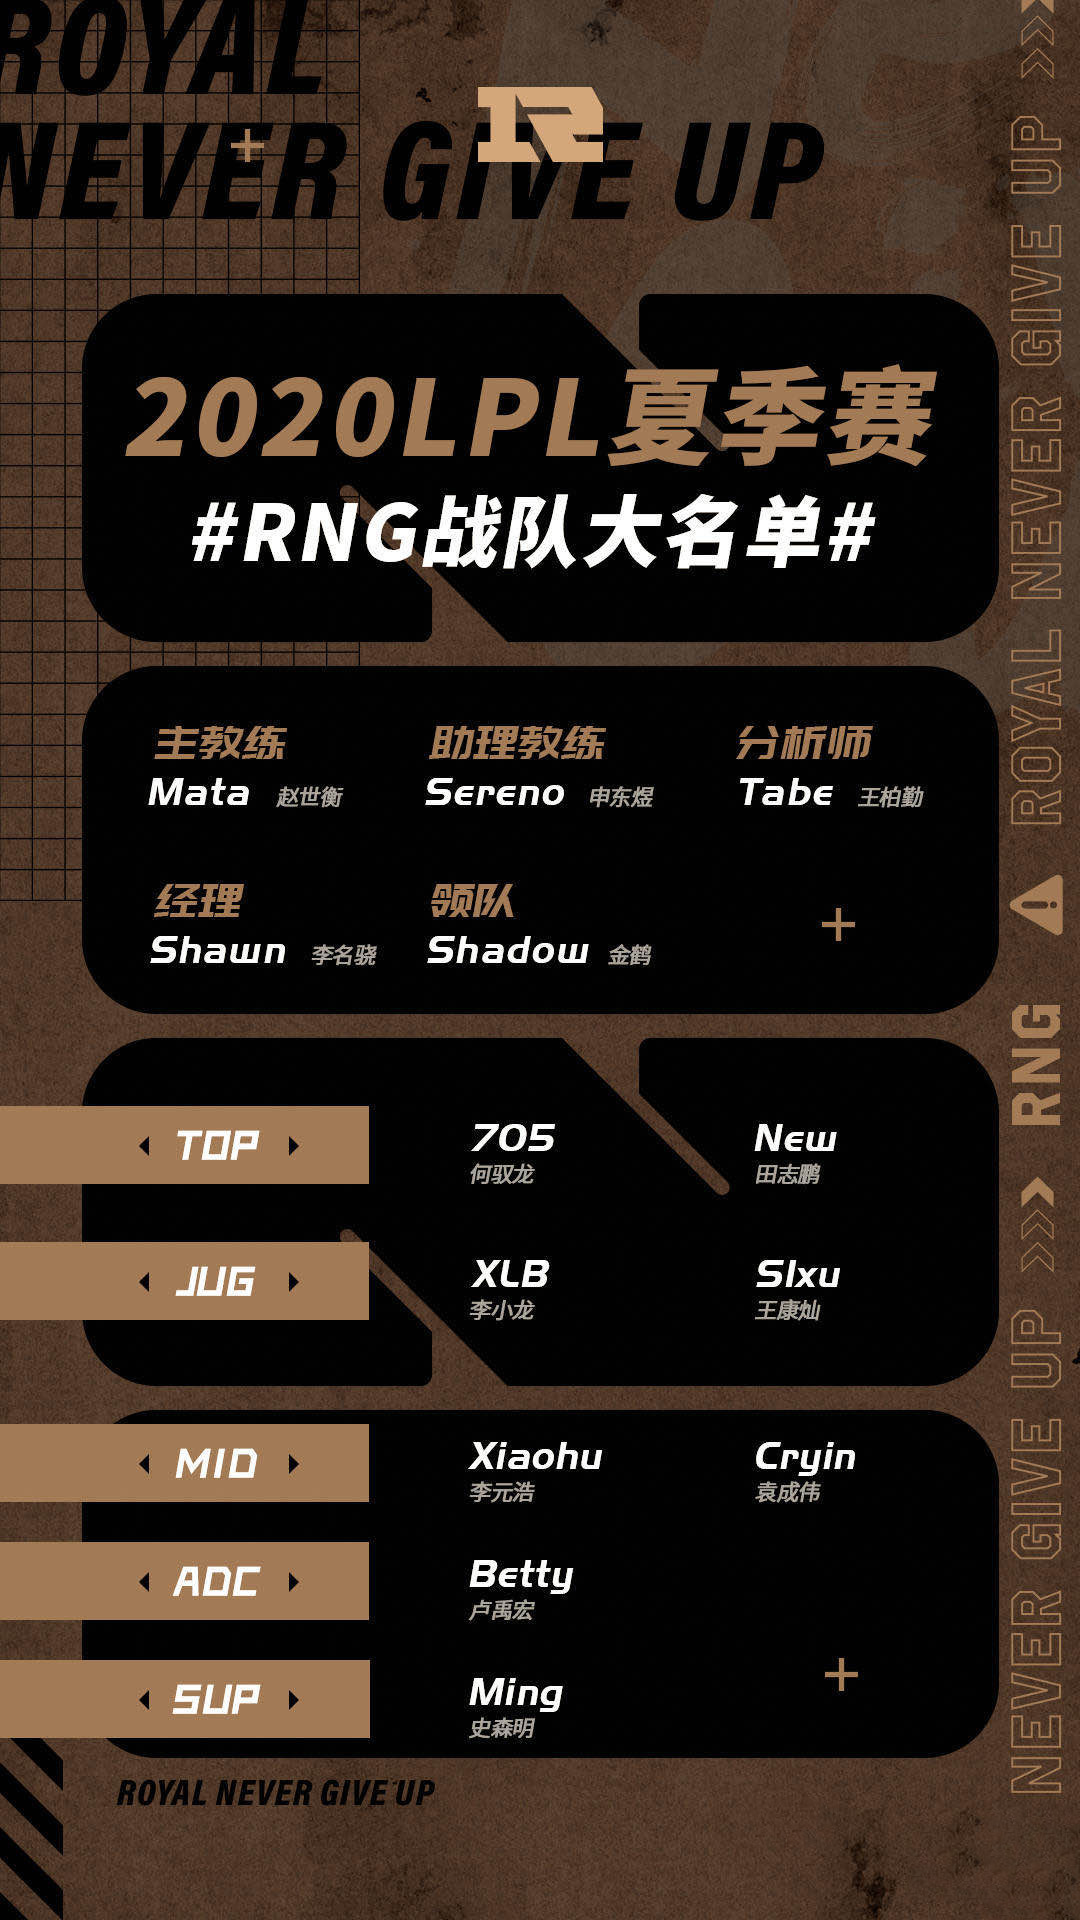 RNG夏季赛大名单公布 新人加入 UZI不在名单内